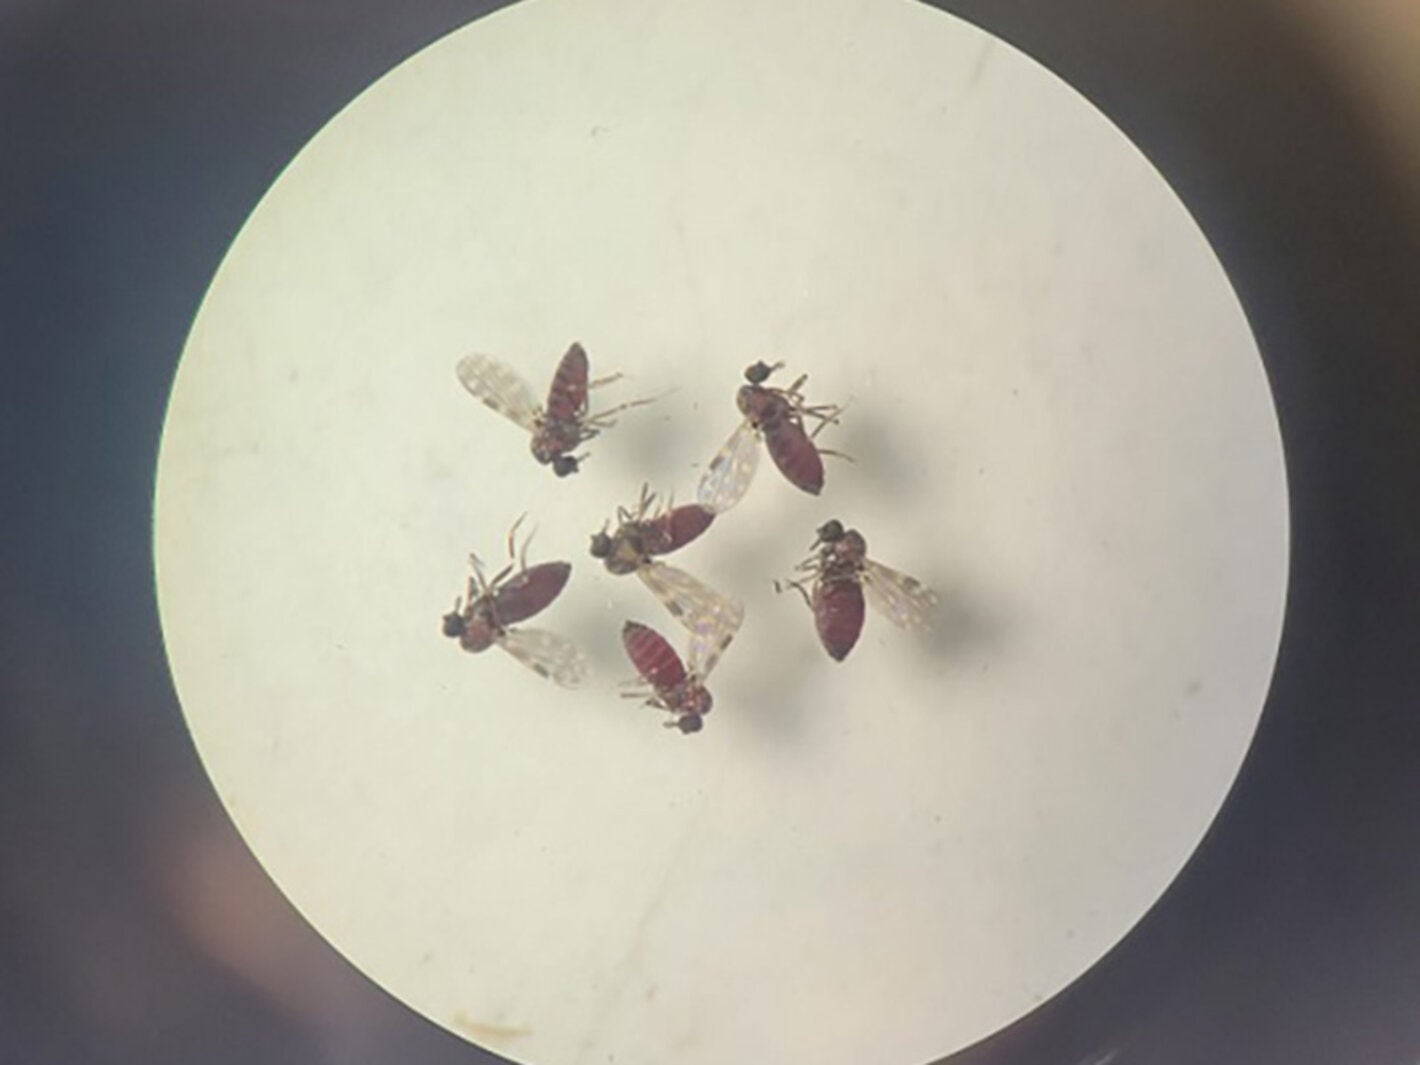 Culicoides paraensis. (Photos: Bruna Lais Sena do Nascimento, Laboratório de Entomologia Médica/SEARB/IEC.)